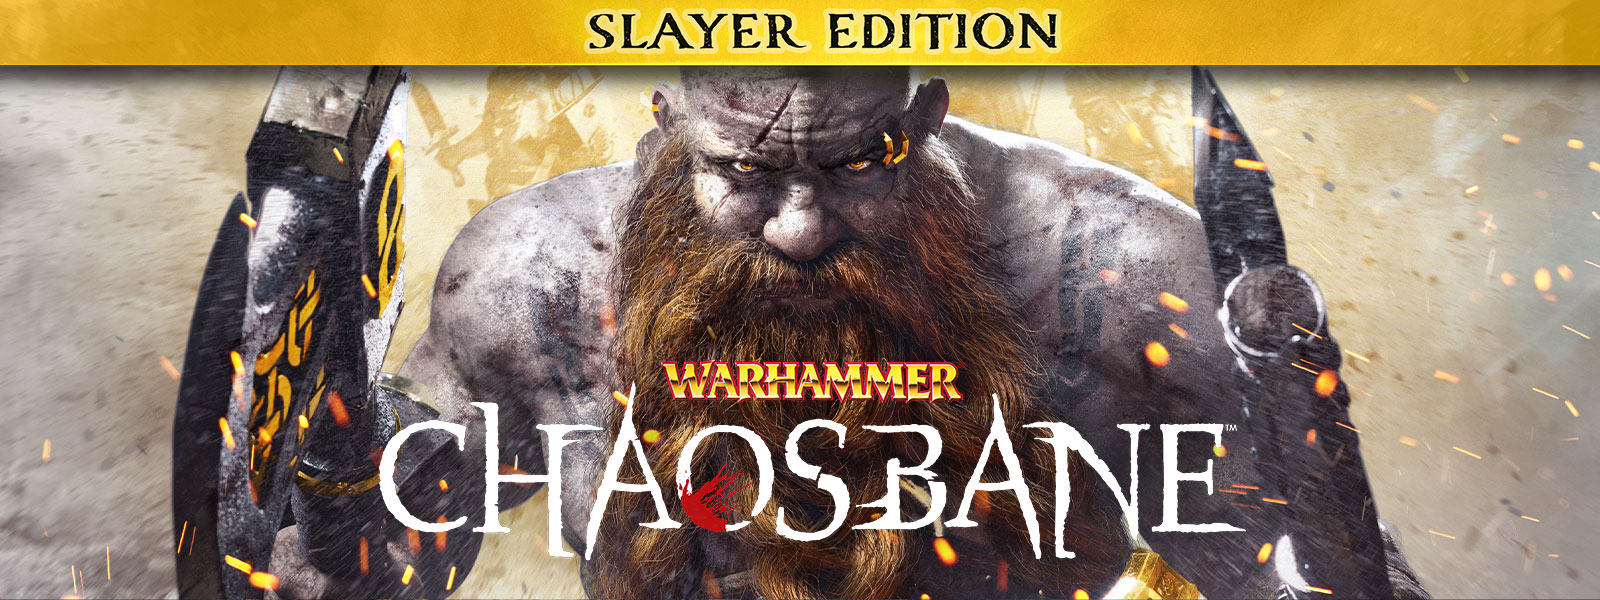 Warhammer: Chaosbane, Slayer Edition, En mand med skæg går gennem gnister af ild med en økse i hver hånd.